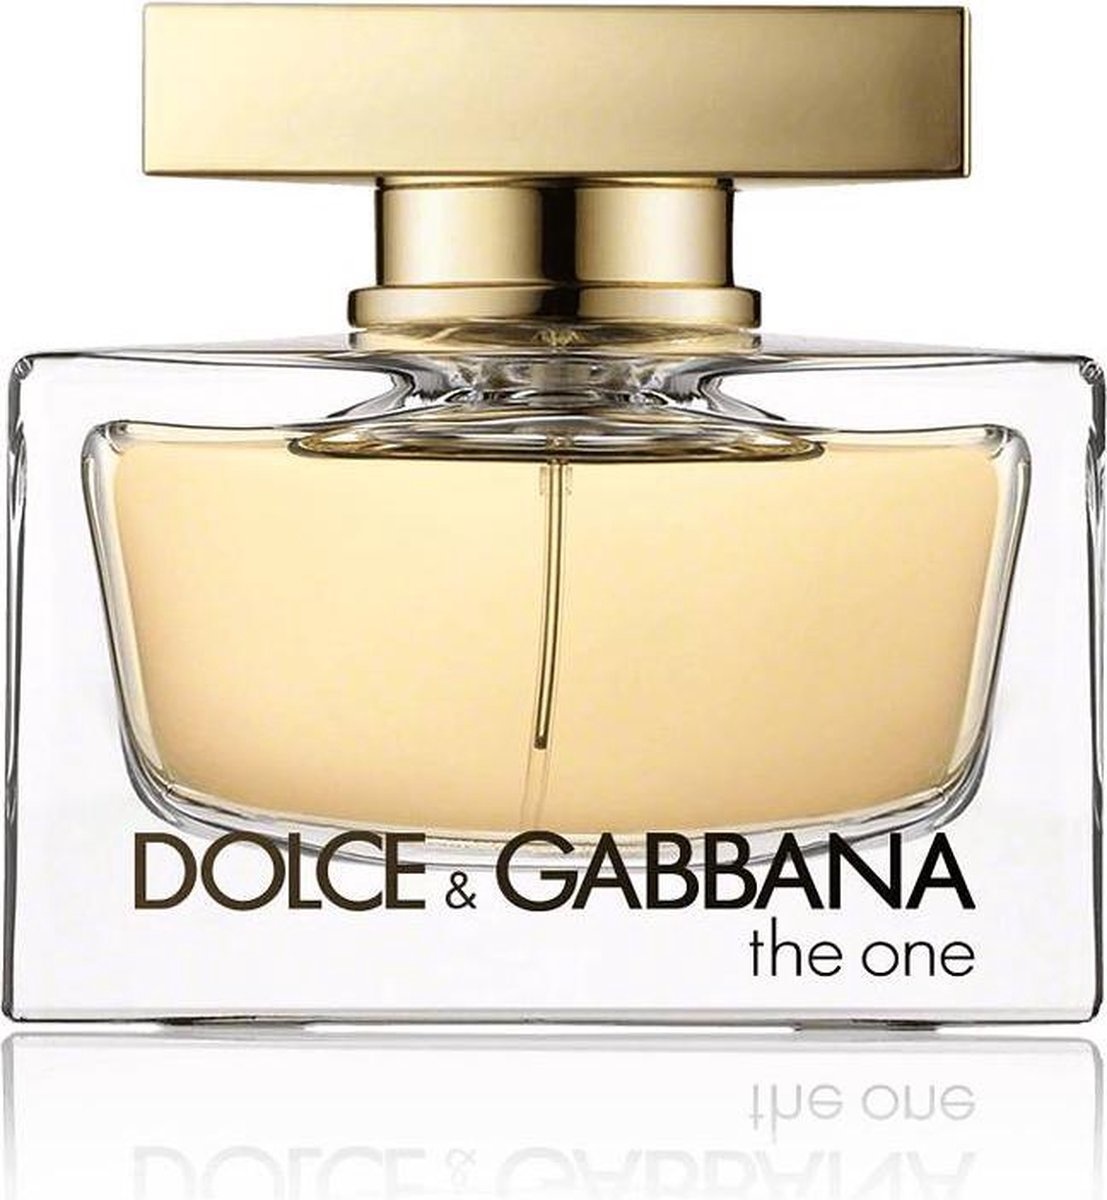 Dolce & Gabbana The One 30 ml - Eau de Parfum - Parfum femme - emballage endommagé